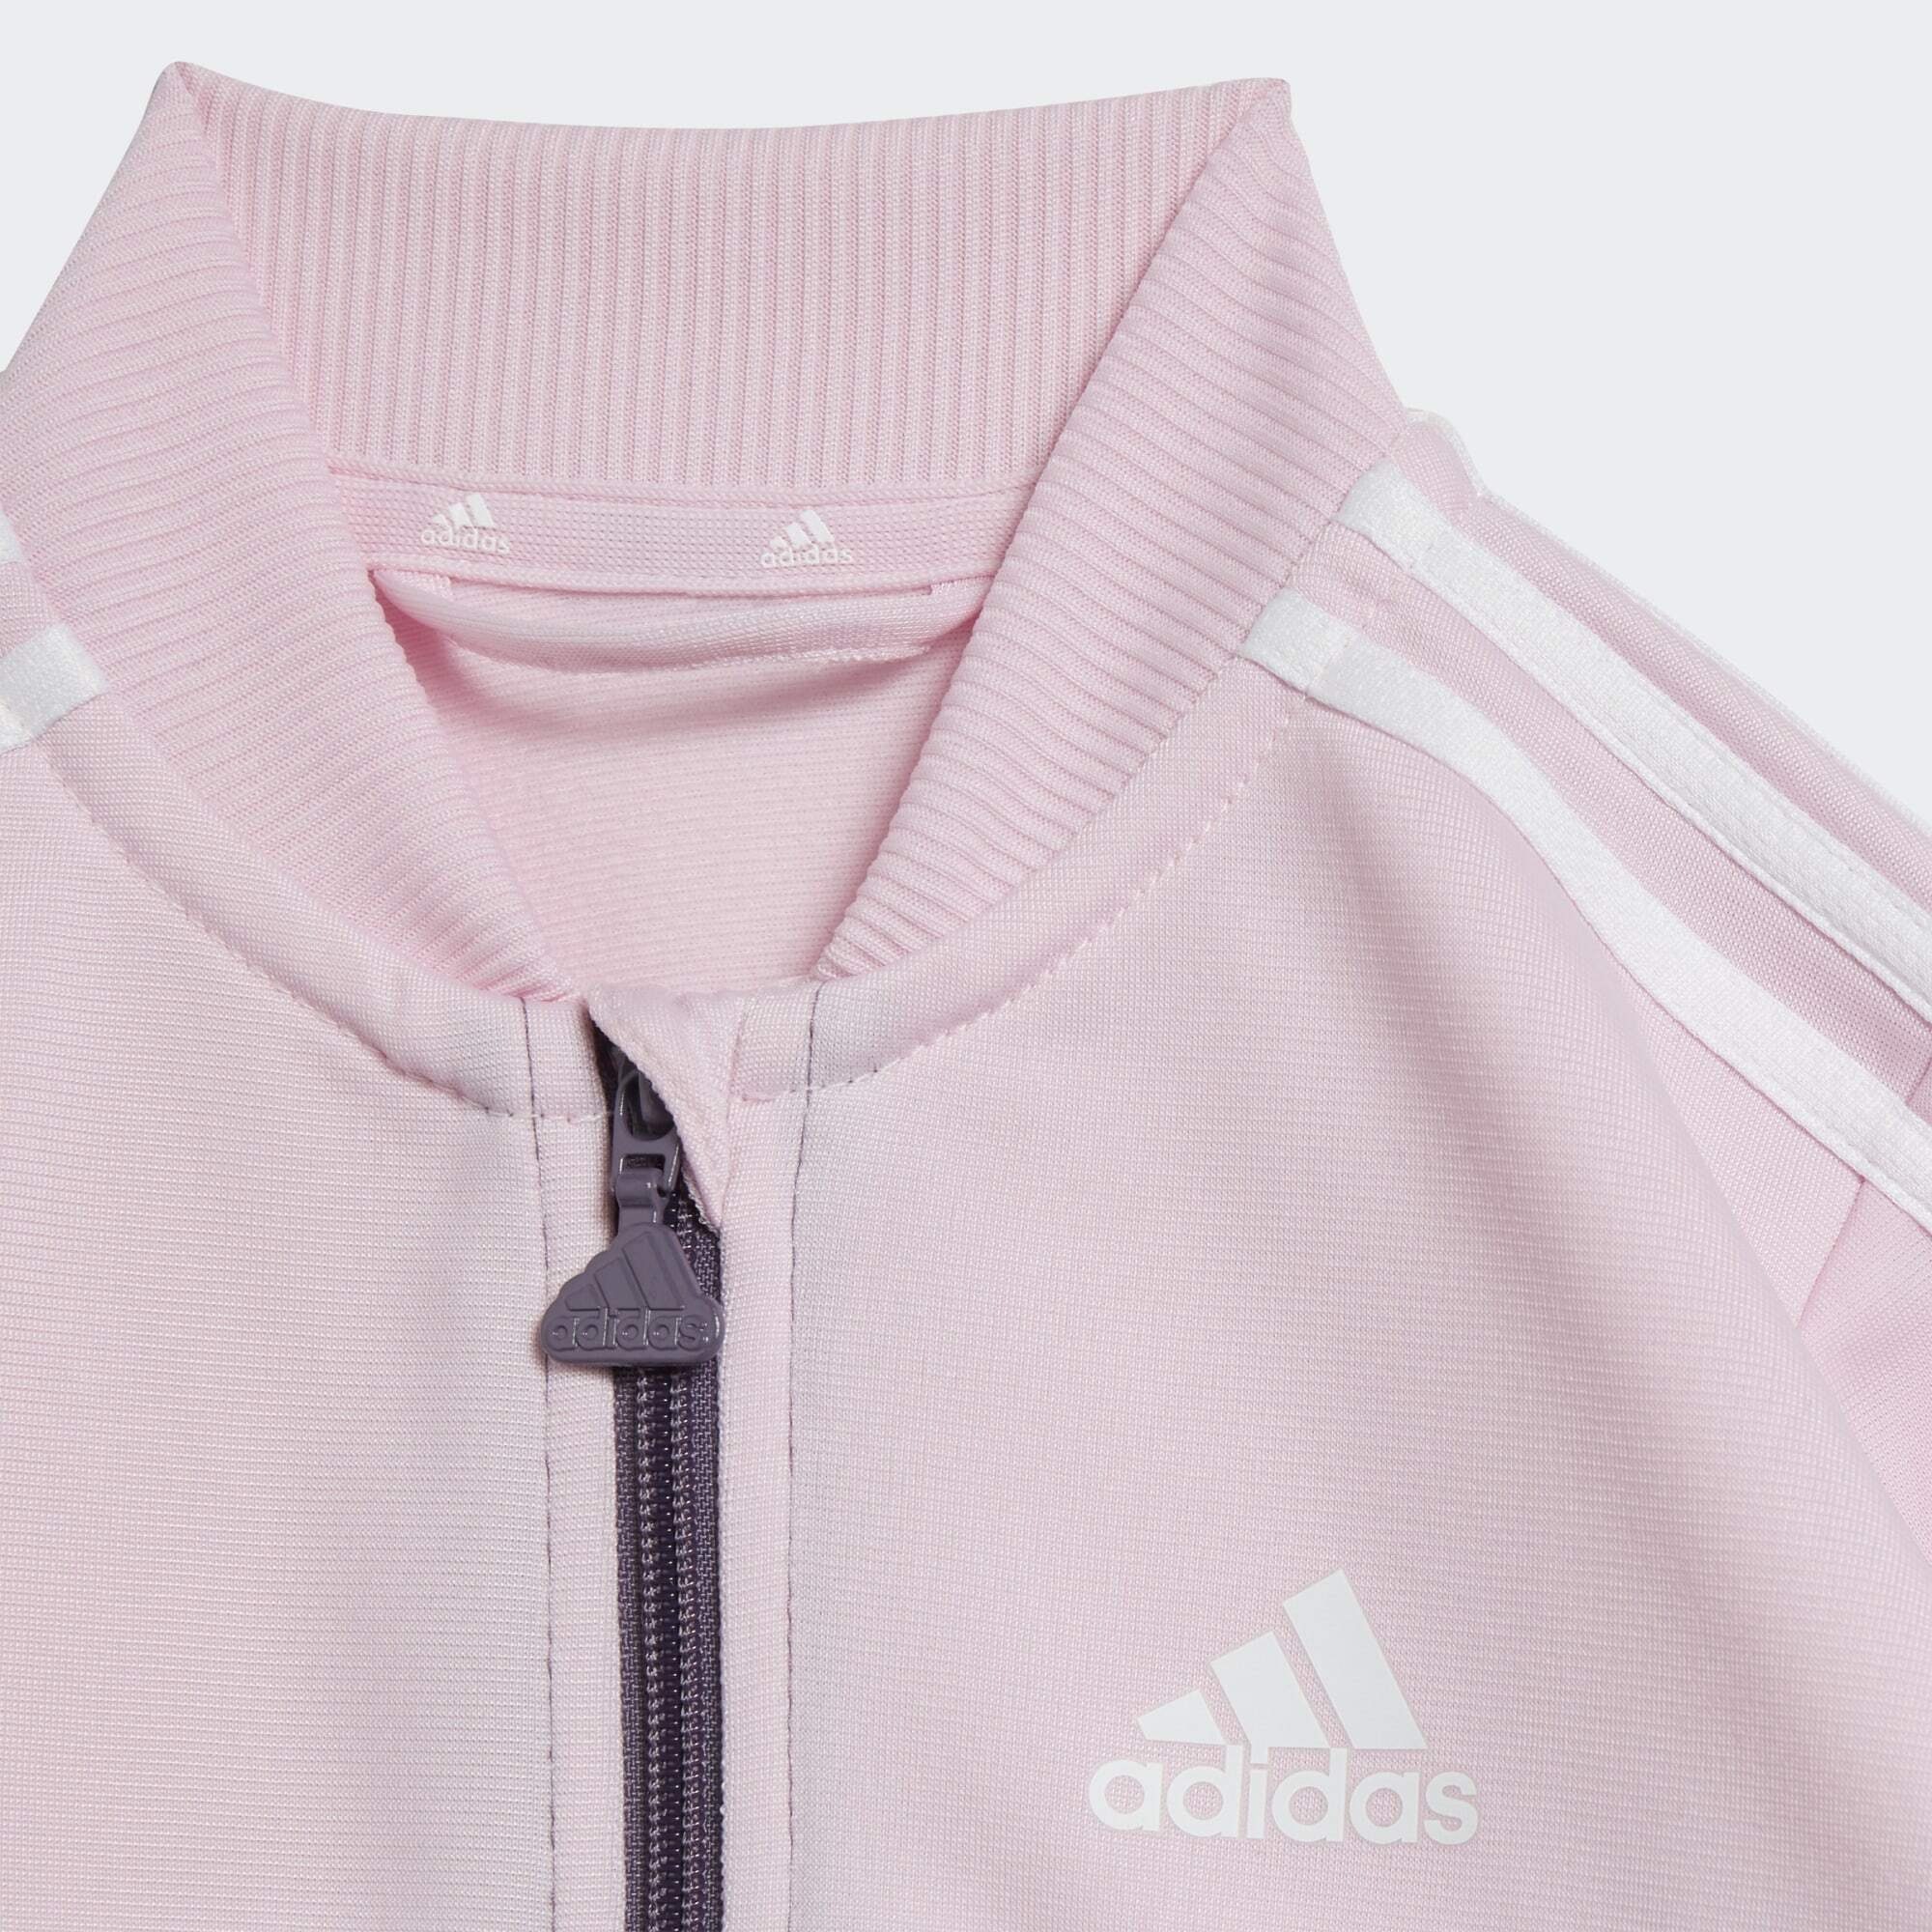 adidas Sportswear Trainingsanzug Clear Pink Shadow / White / Violet